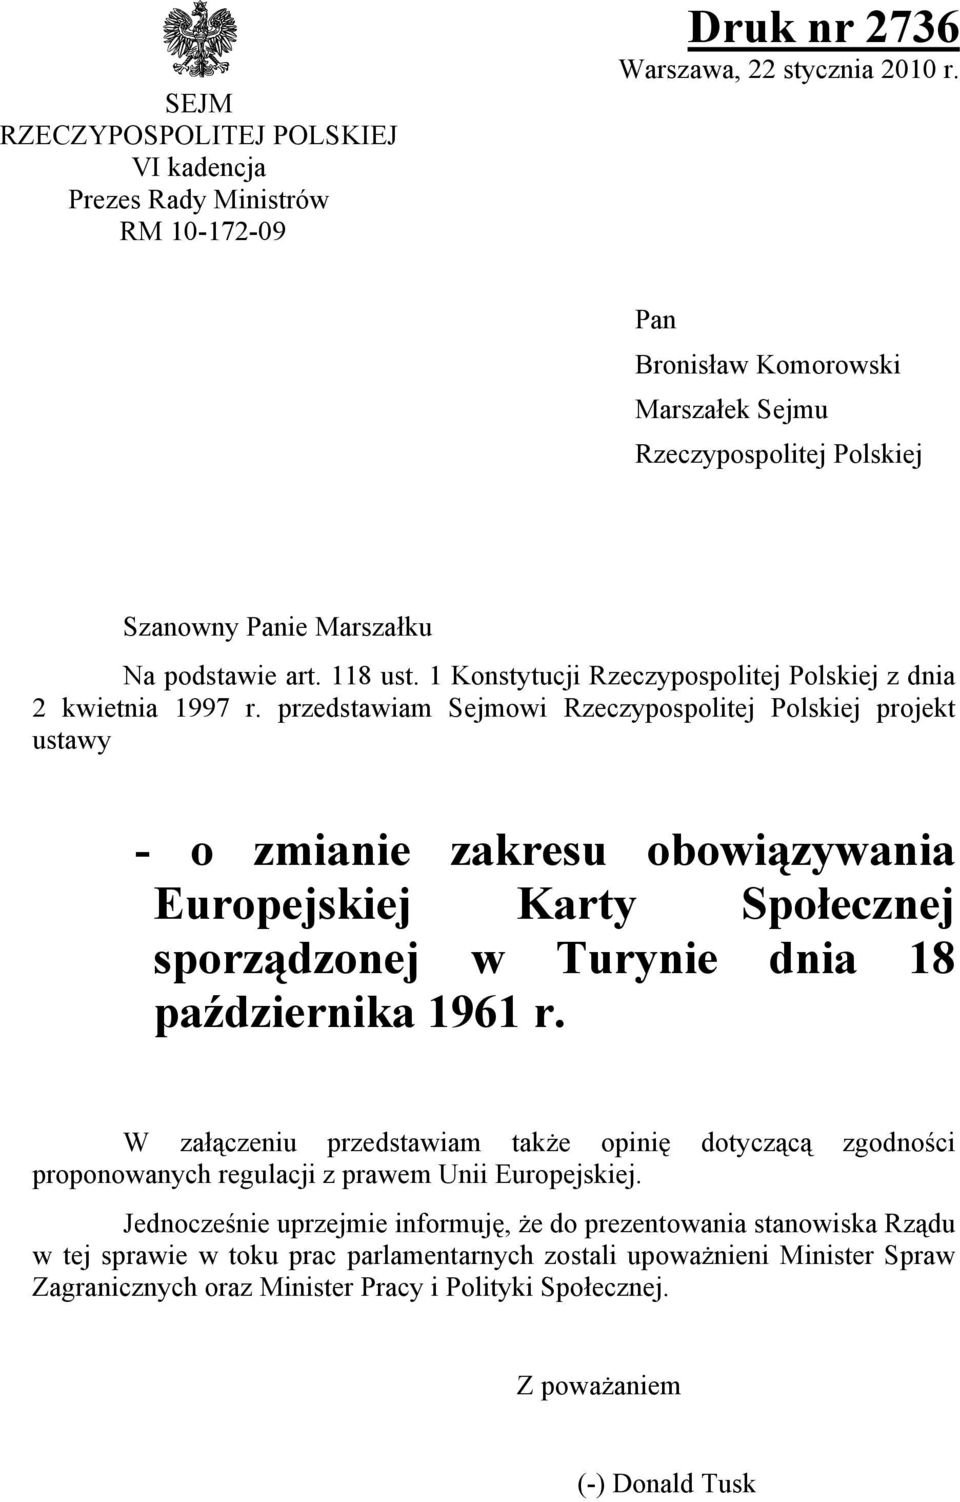 przedstawiam Sejmowi Rzeczypospolitej Polskiej projekt ustawy - o zmianie zakresu obowiązywania Europejskiej Karty Społecznej sporządzonej w Turynie dnia 18 października 1961 r.